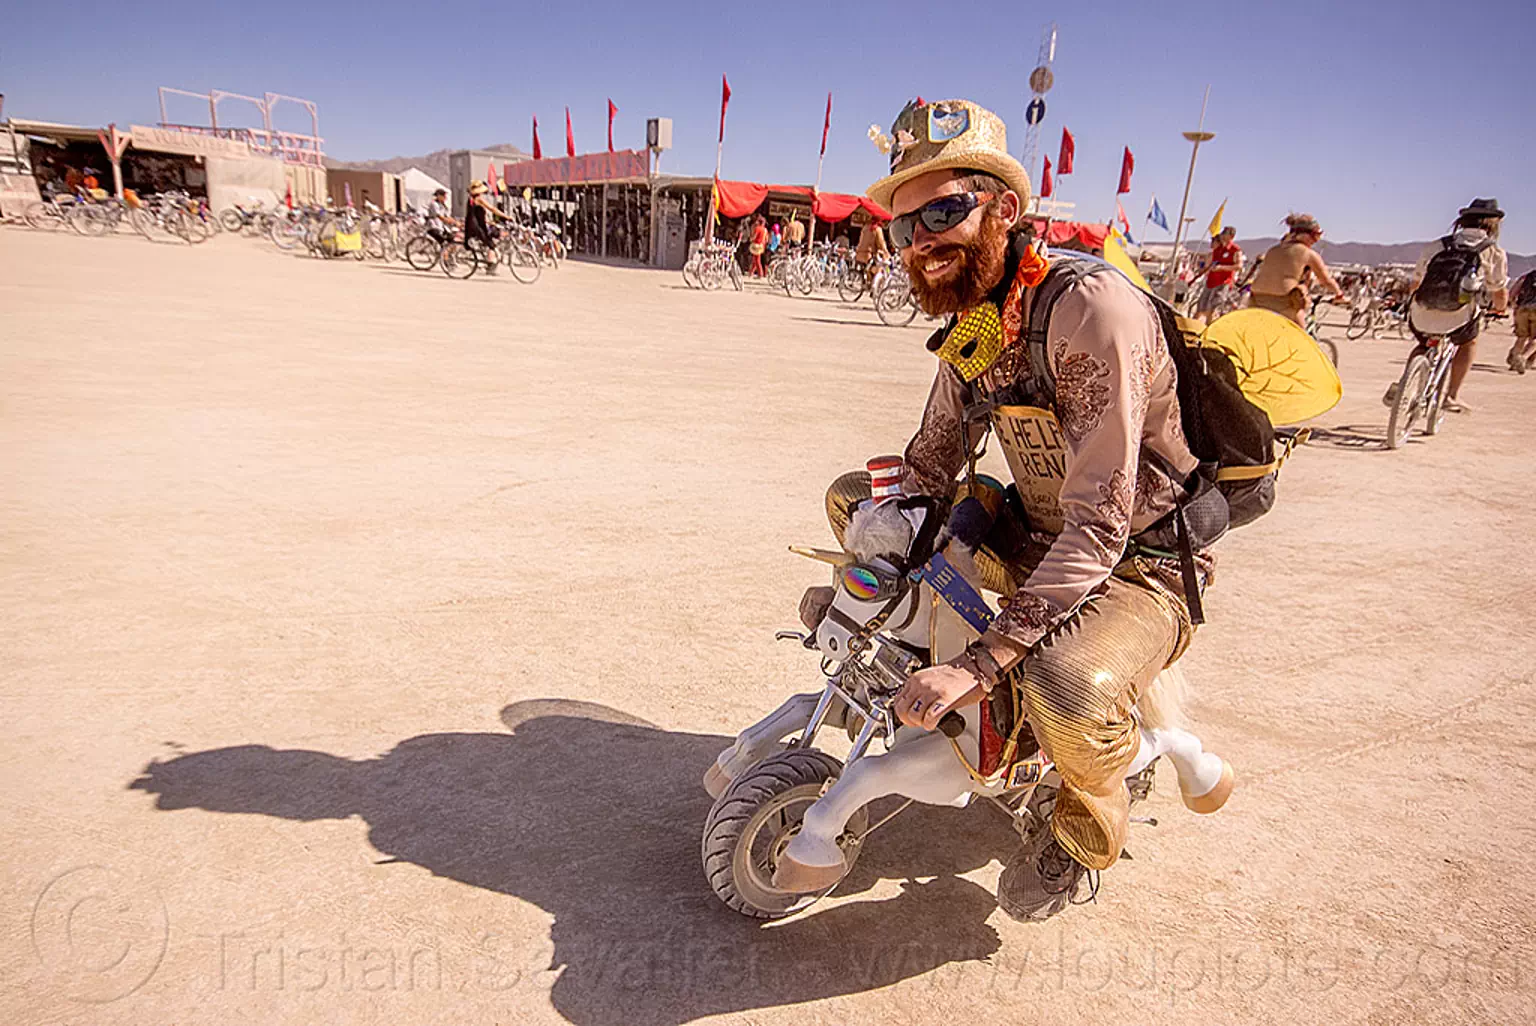 riding unicorn mini motorbike - burning man 2015, burning man, mini moto, mini motorbike, motorcycle, riding, unicorn